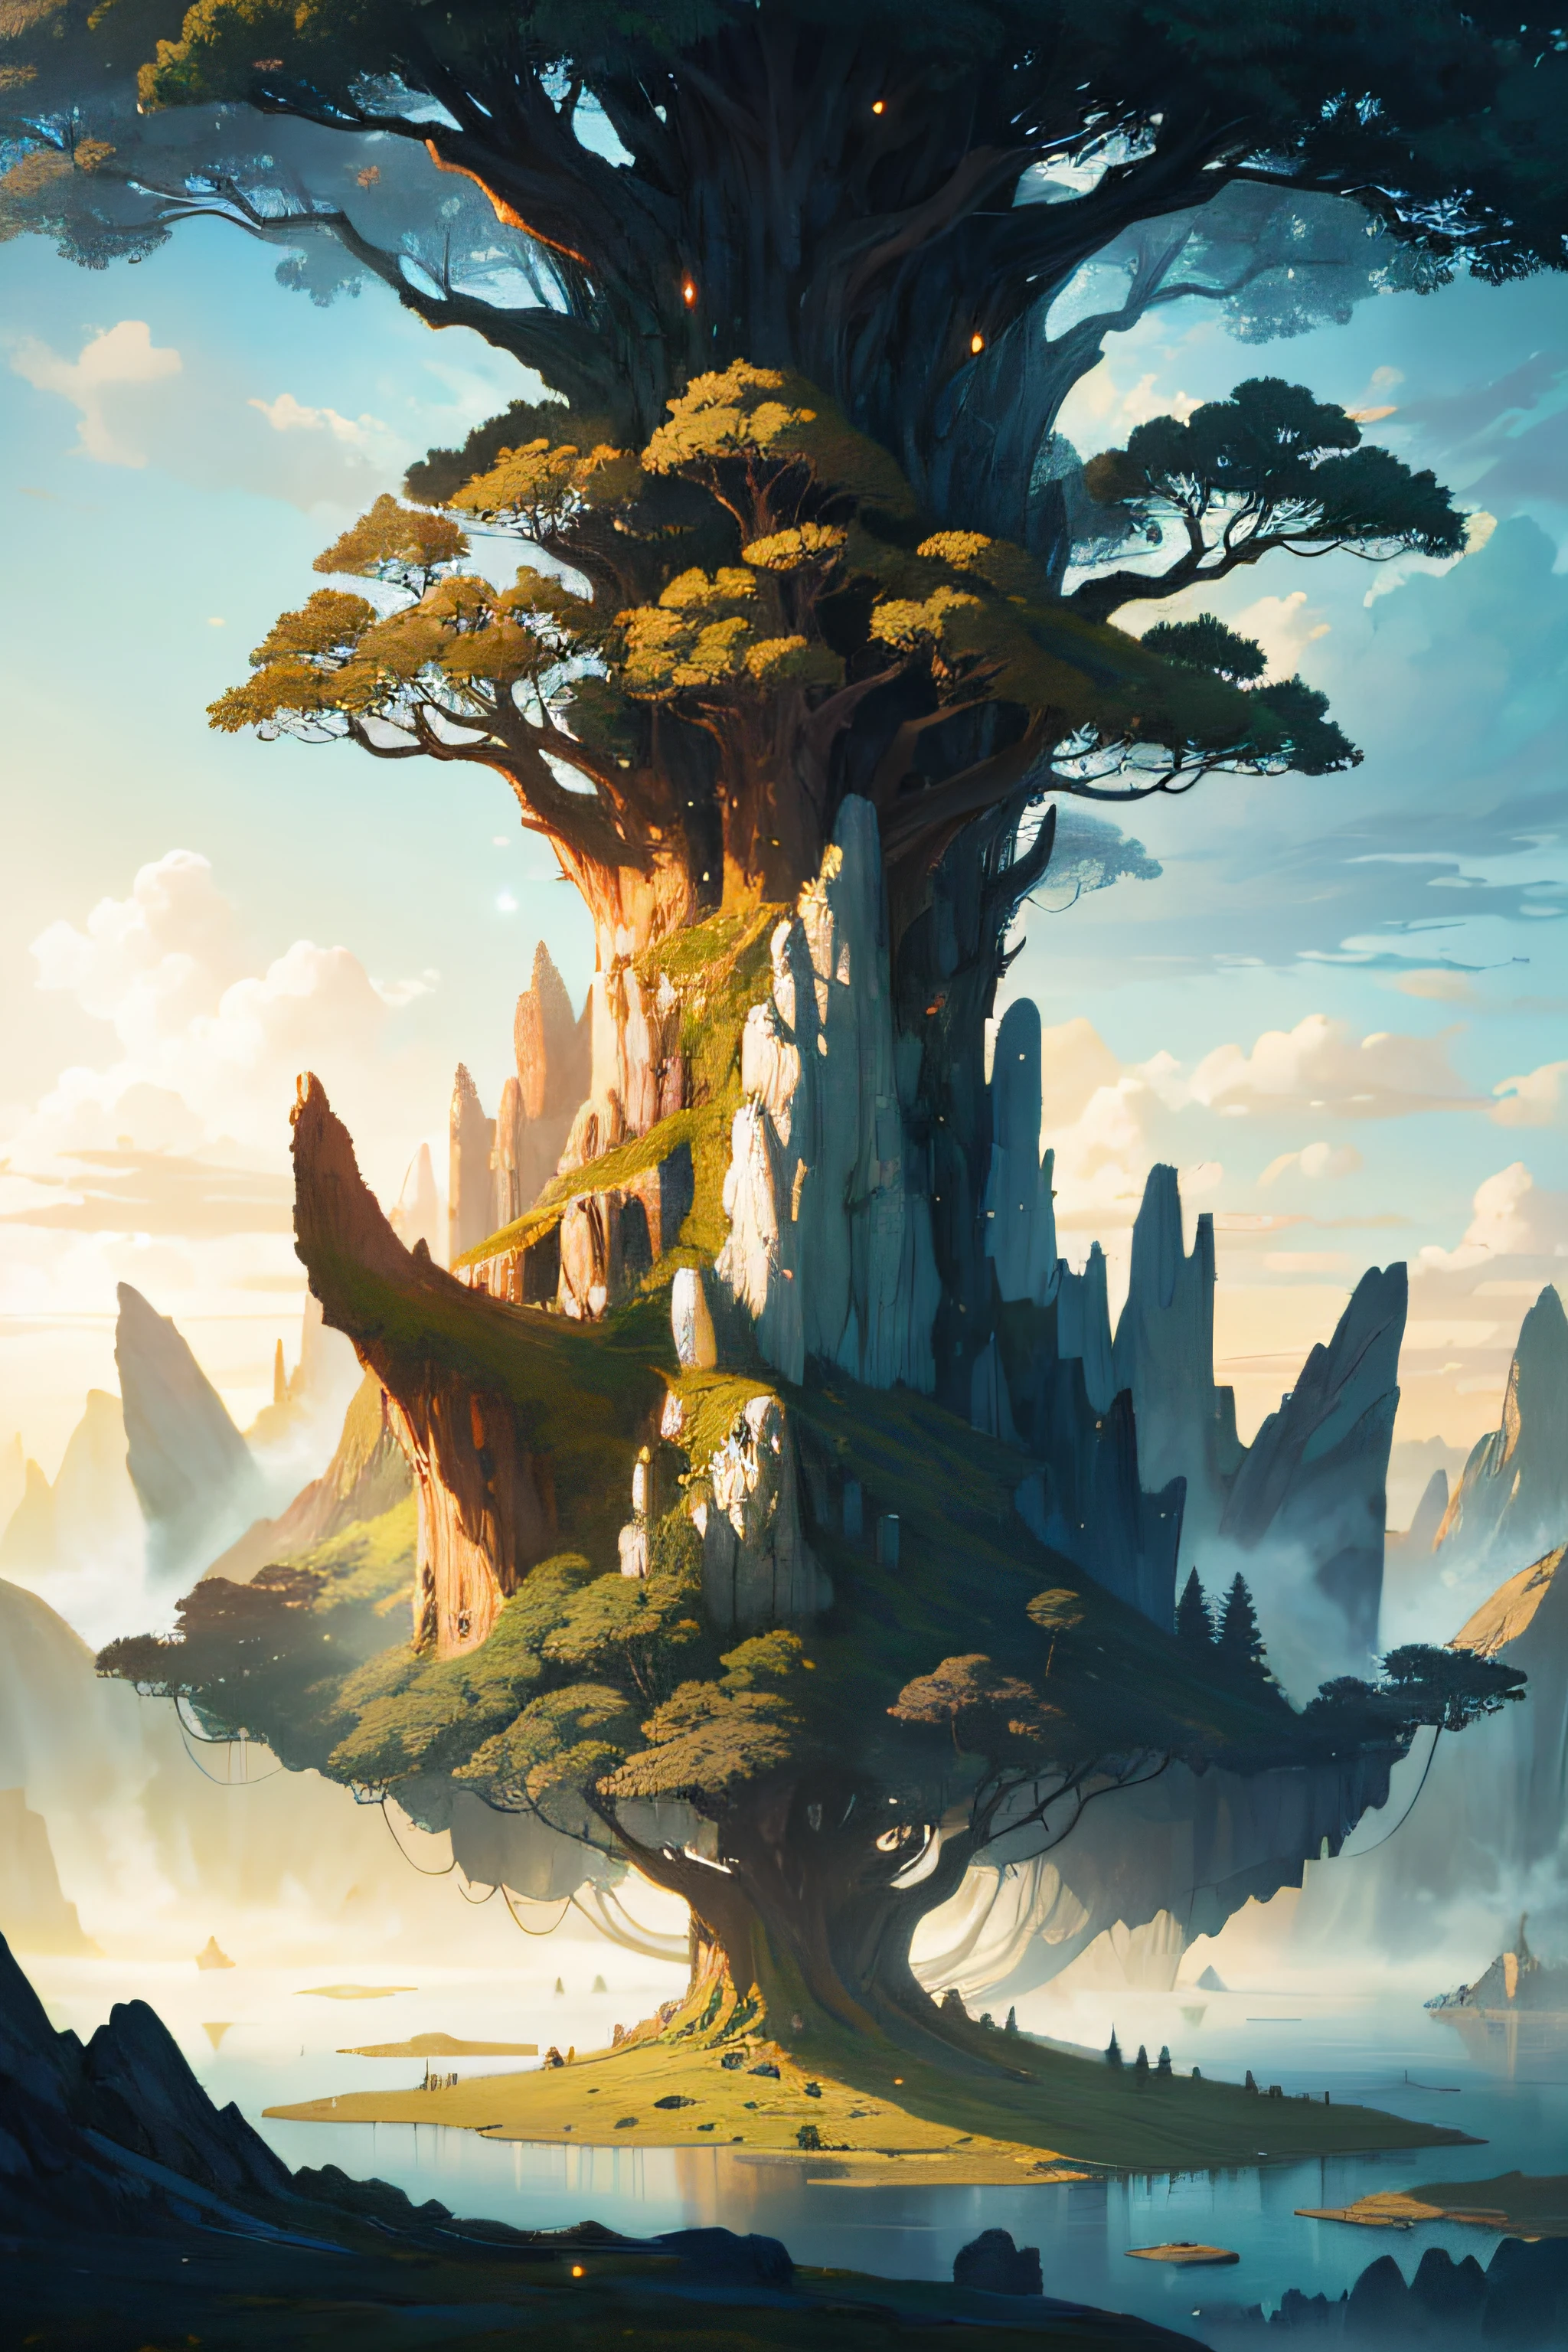 Un paisaje místico y épico, Con un mundo fantástico y surrealista de islas flotantes., árboles gigantes, y criaturas míticas, que transportan al espectador a un mundo de imaginación y asombro, Estación de arte, arte digital, Intrincado, tendencias, colores brillantes,4k